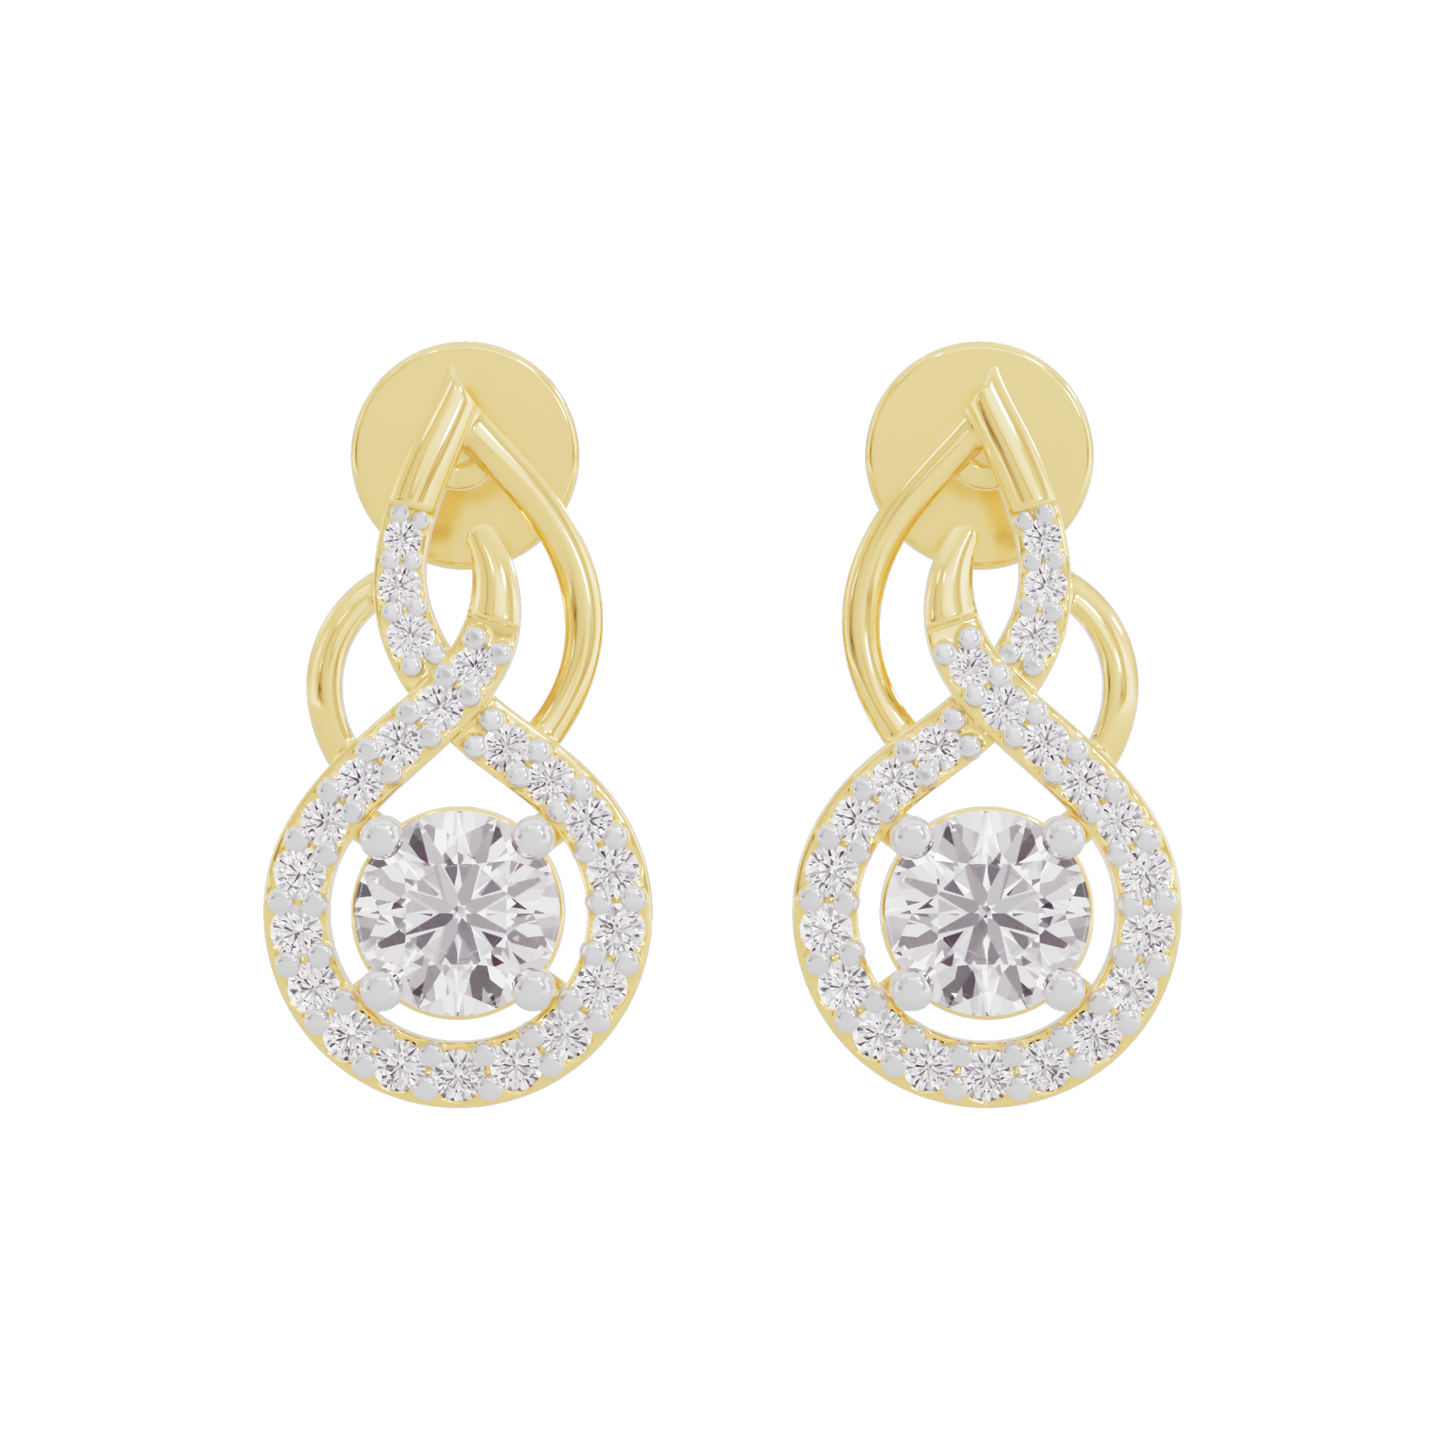 Celestial Serenity Diamond Earrings